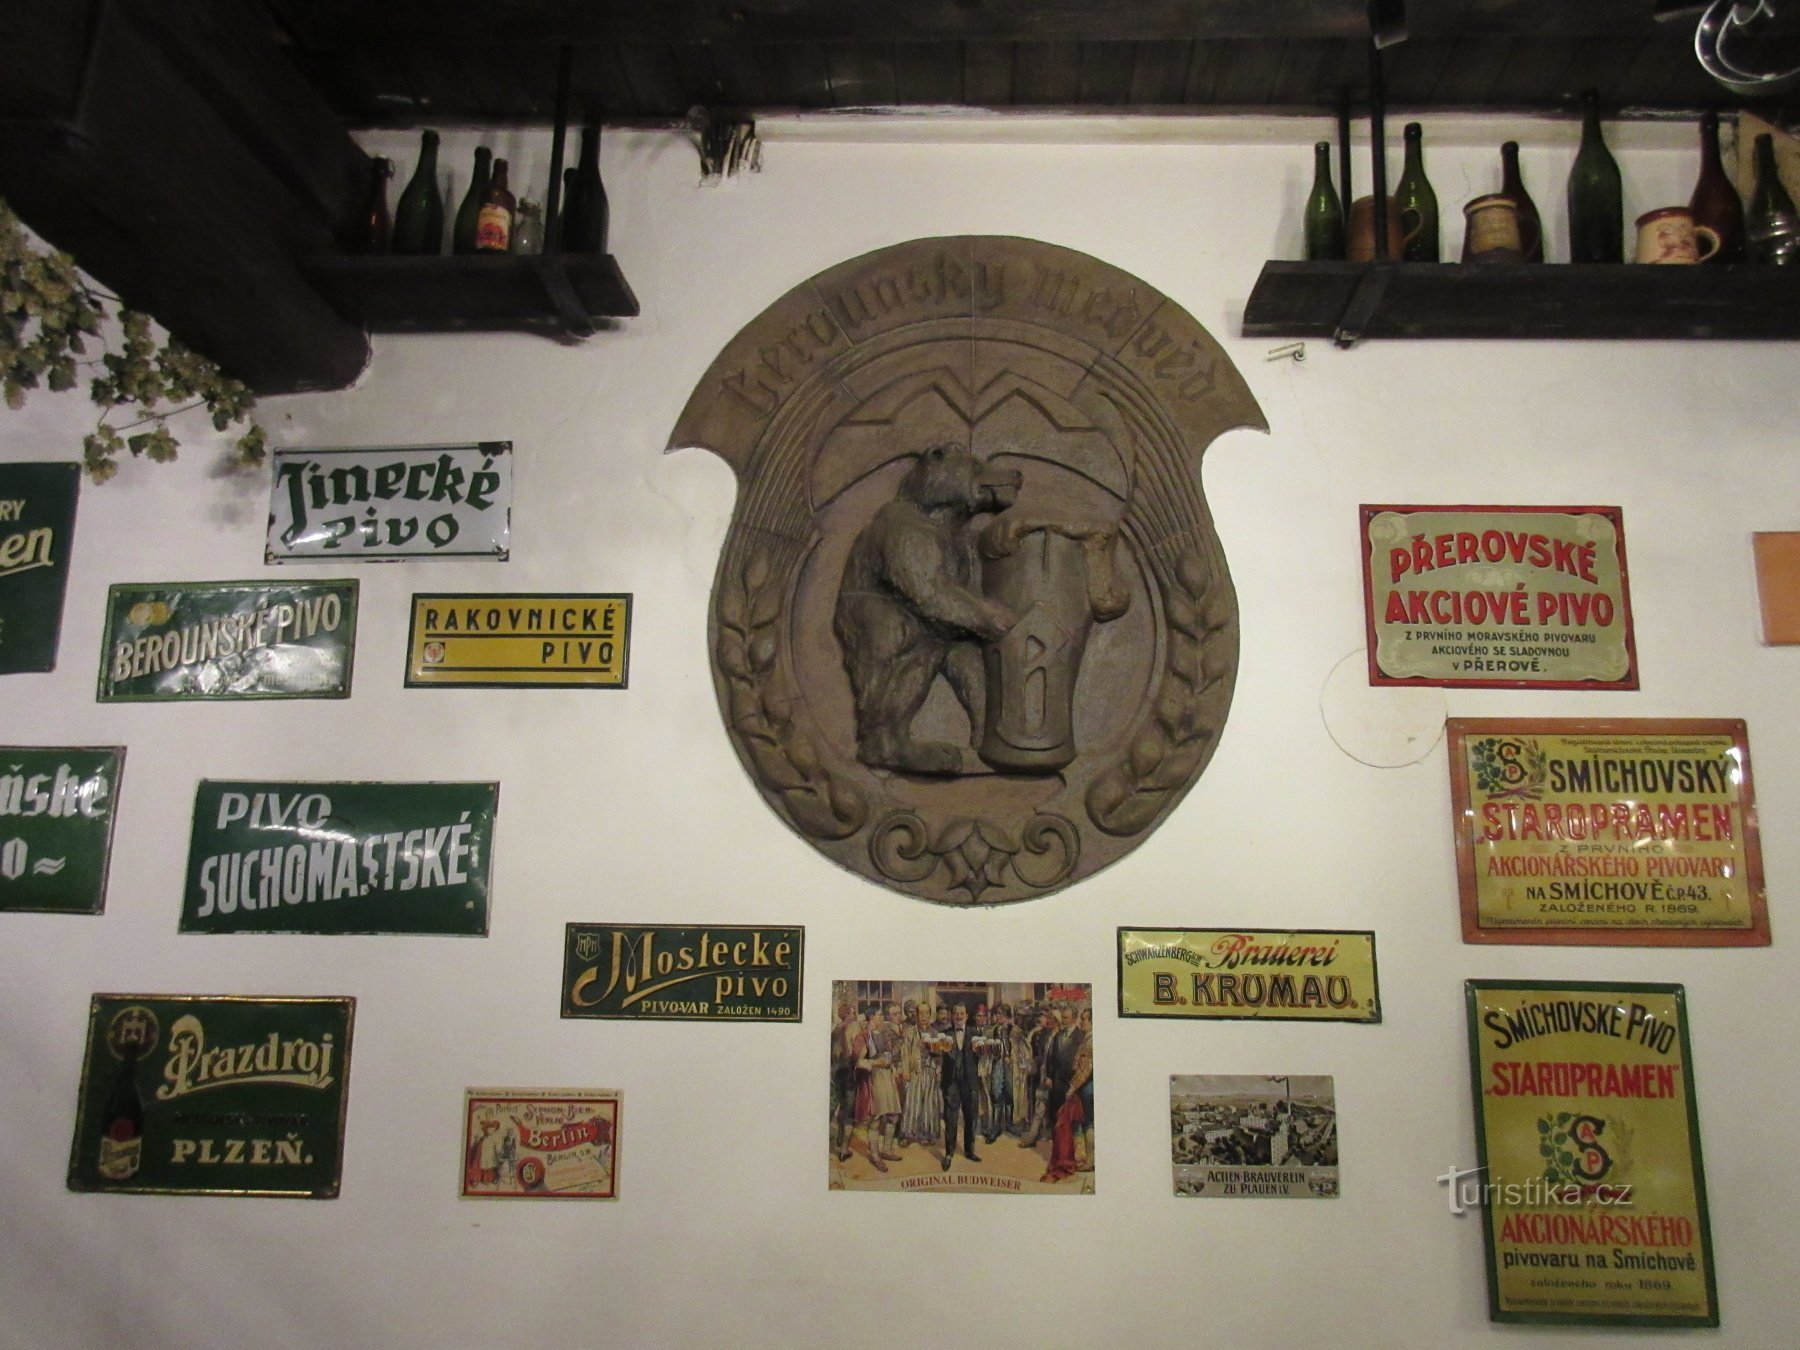 ベロウンの醸造の歴史と家族経営の醸造所ベロウンスキー・メドヴェド